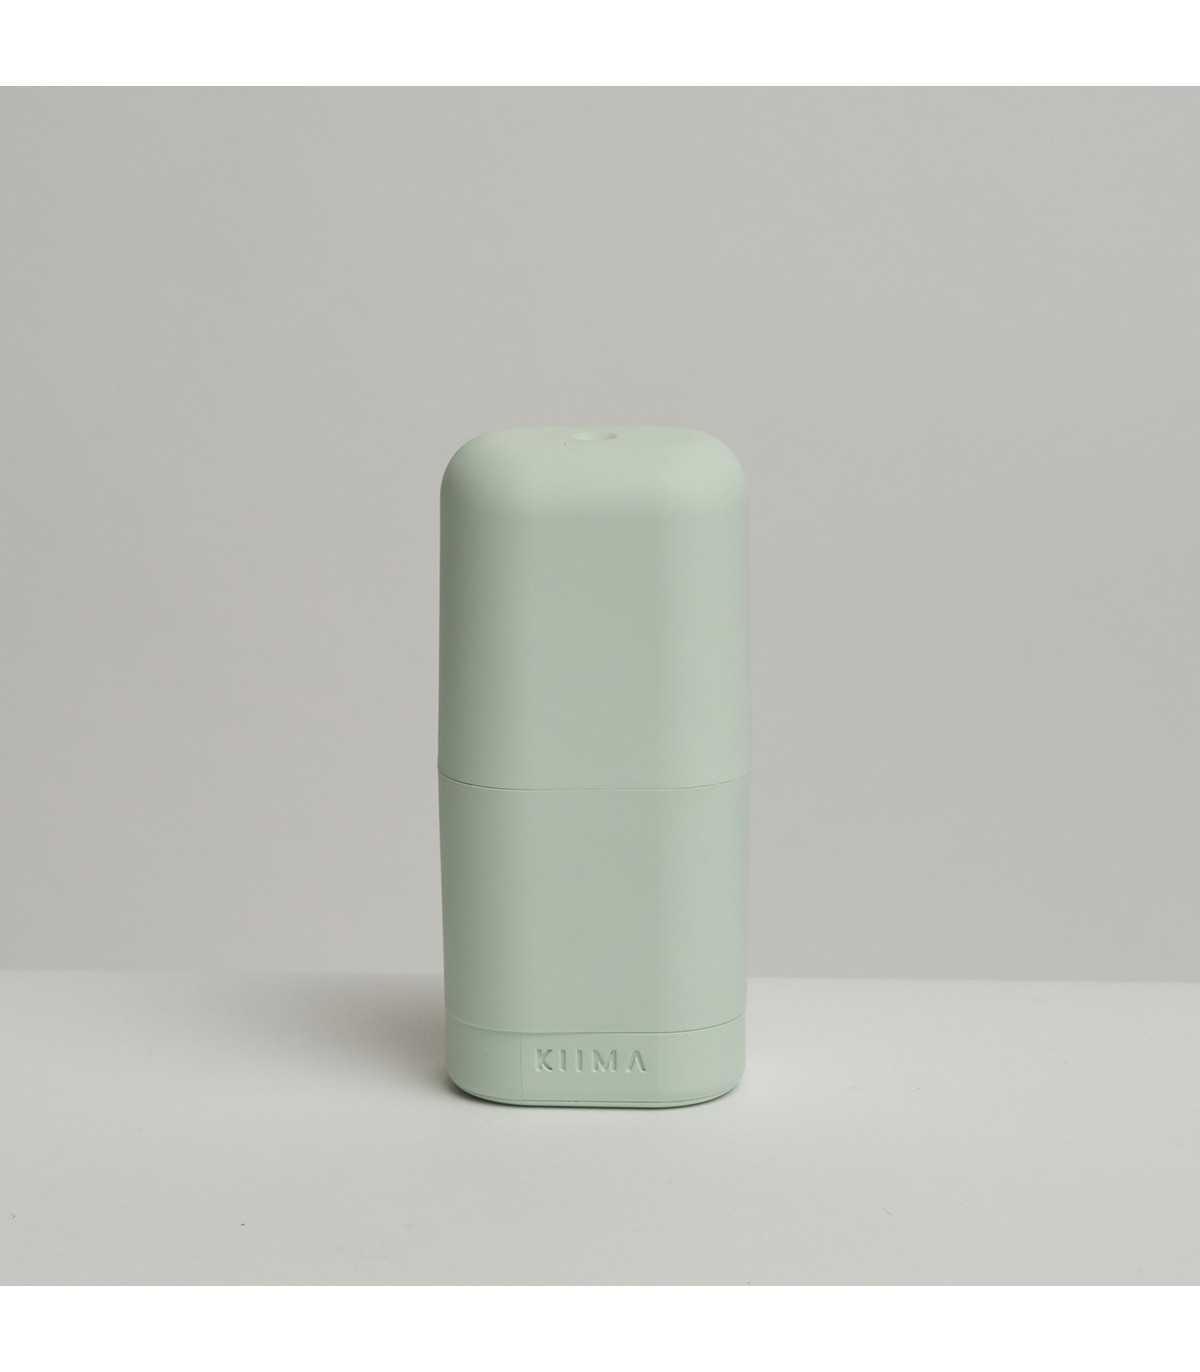 BANBU APL001 Aplicador desodorante sólido Reutilizable. Fabricado en España. NO incluye desodorante.